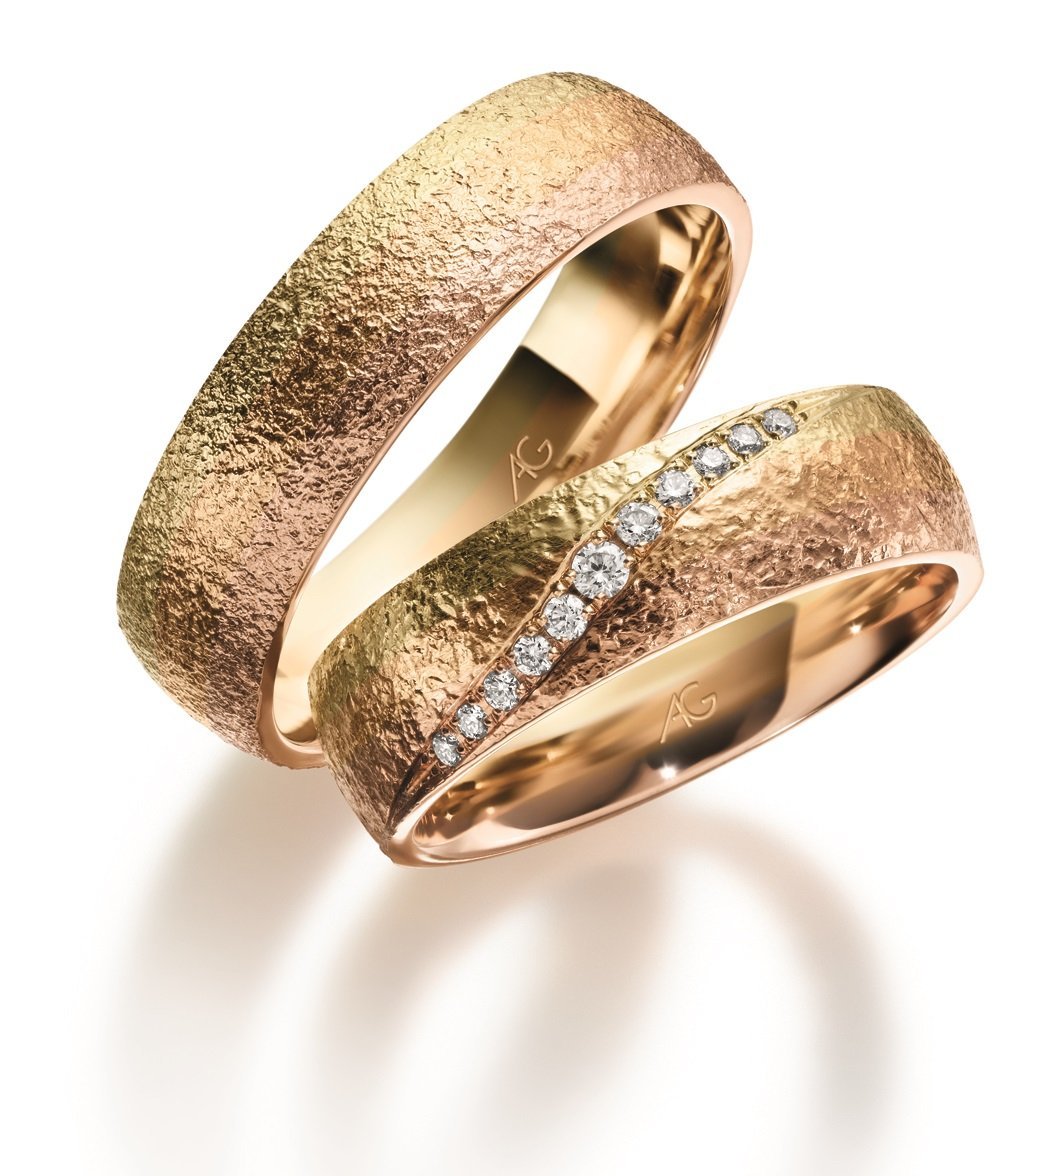 Найти золотое обручальное кольцо. Золотой прииск обручальные кольца. Обручальные кольца парные золотые 585. Золотое кольцо обручалка. Кольца золотые женские обручальные 585.